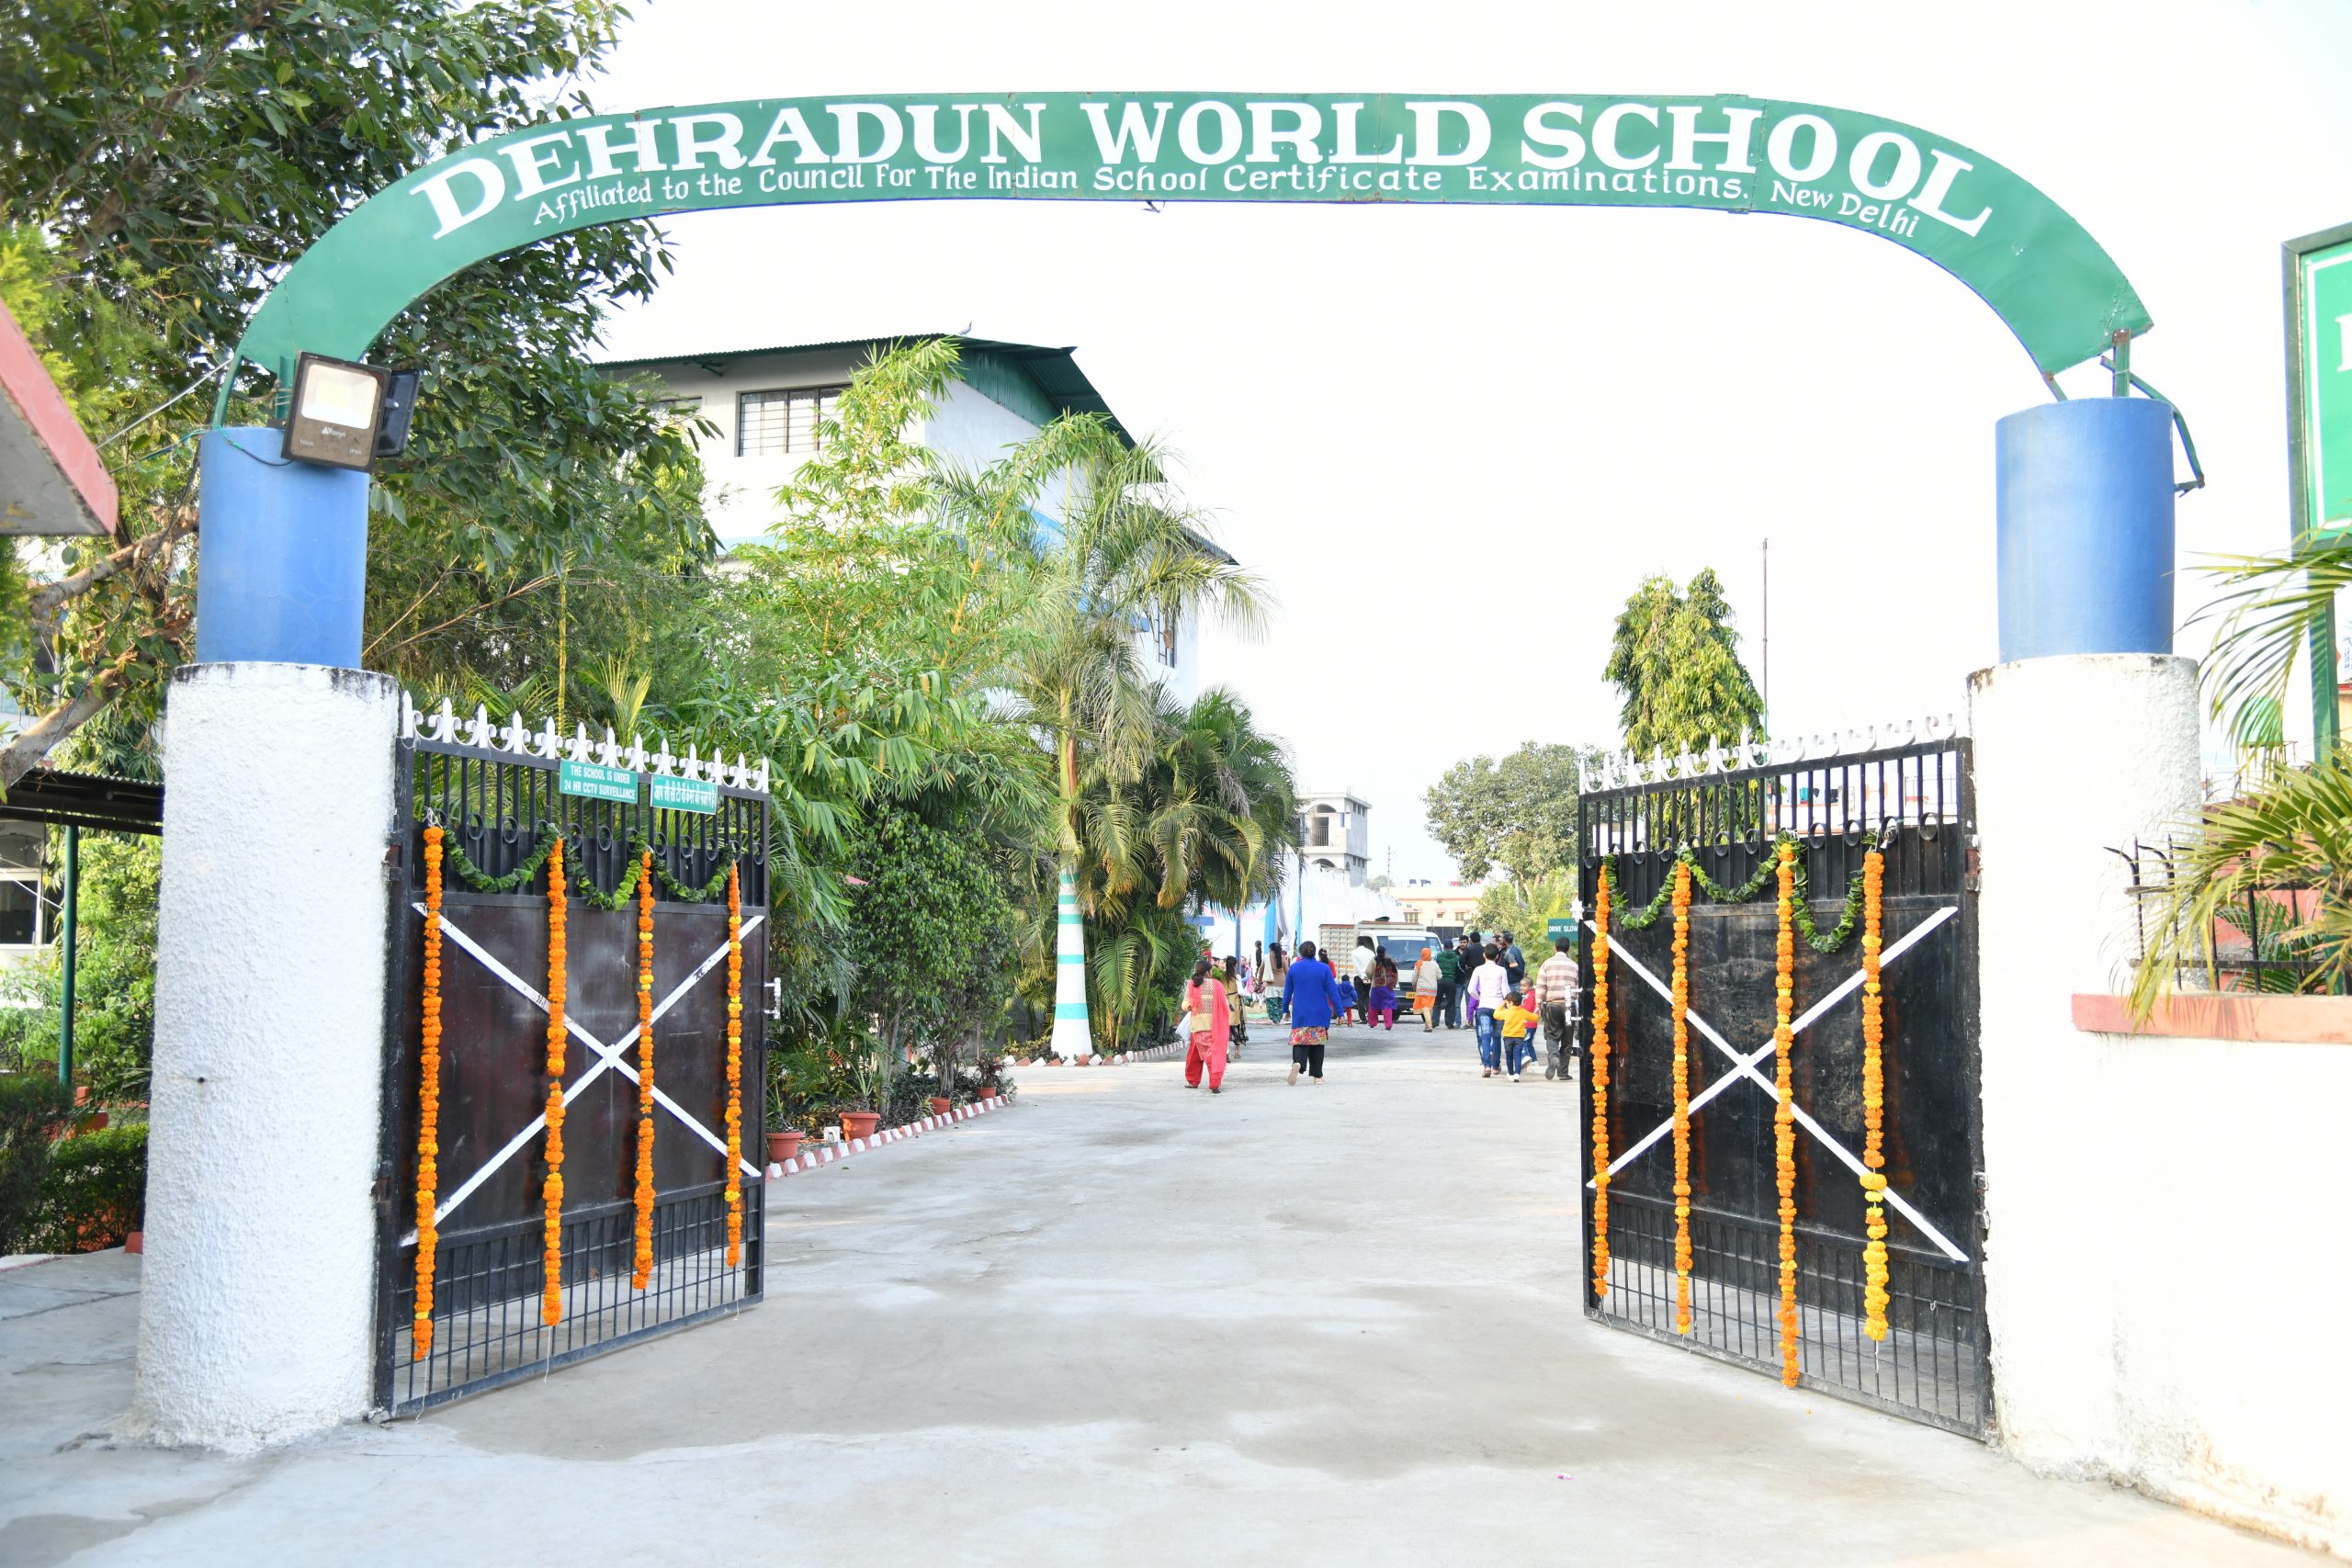 DEHRADUN WORLD SCHOOL